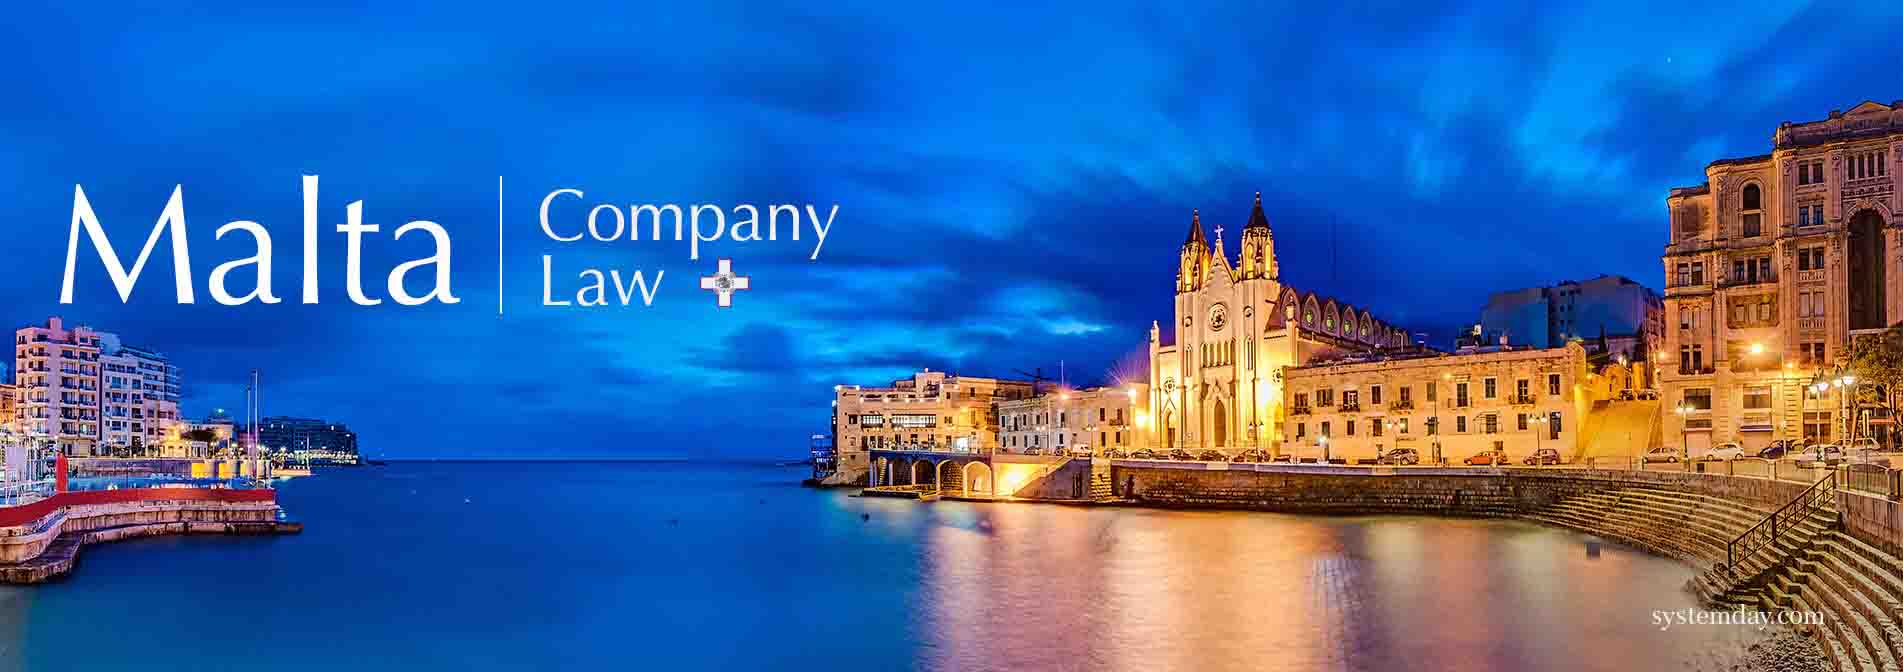 Malta Company Law